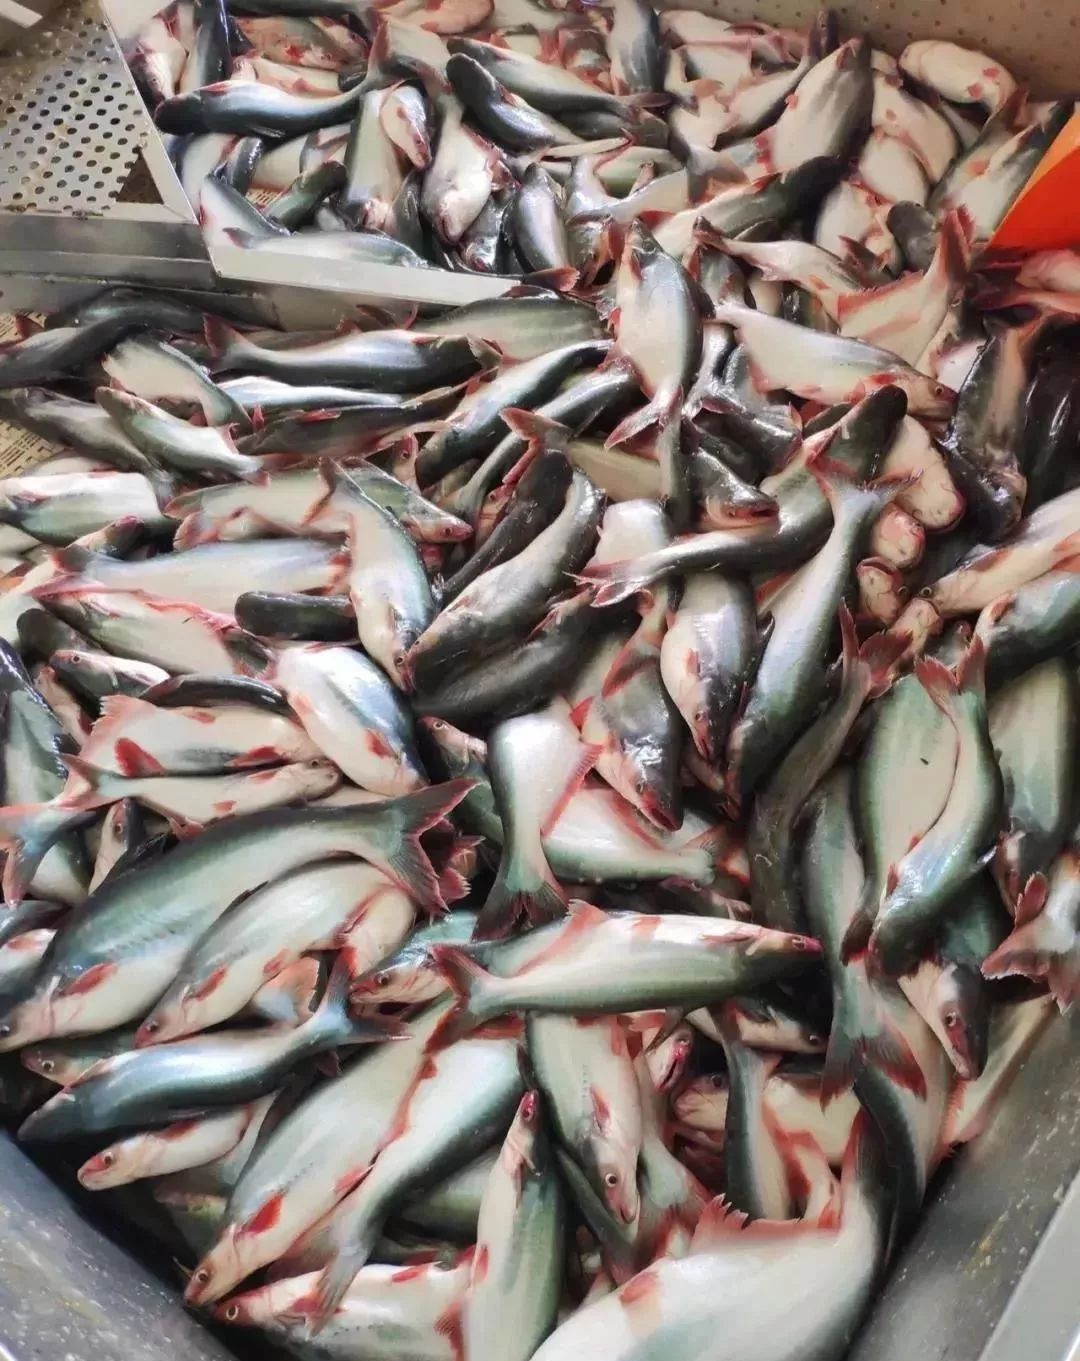 【行业资讯】中国掀起巴沙鱼养殖热潮,让这个国家感受到了压力,明年